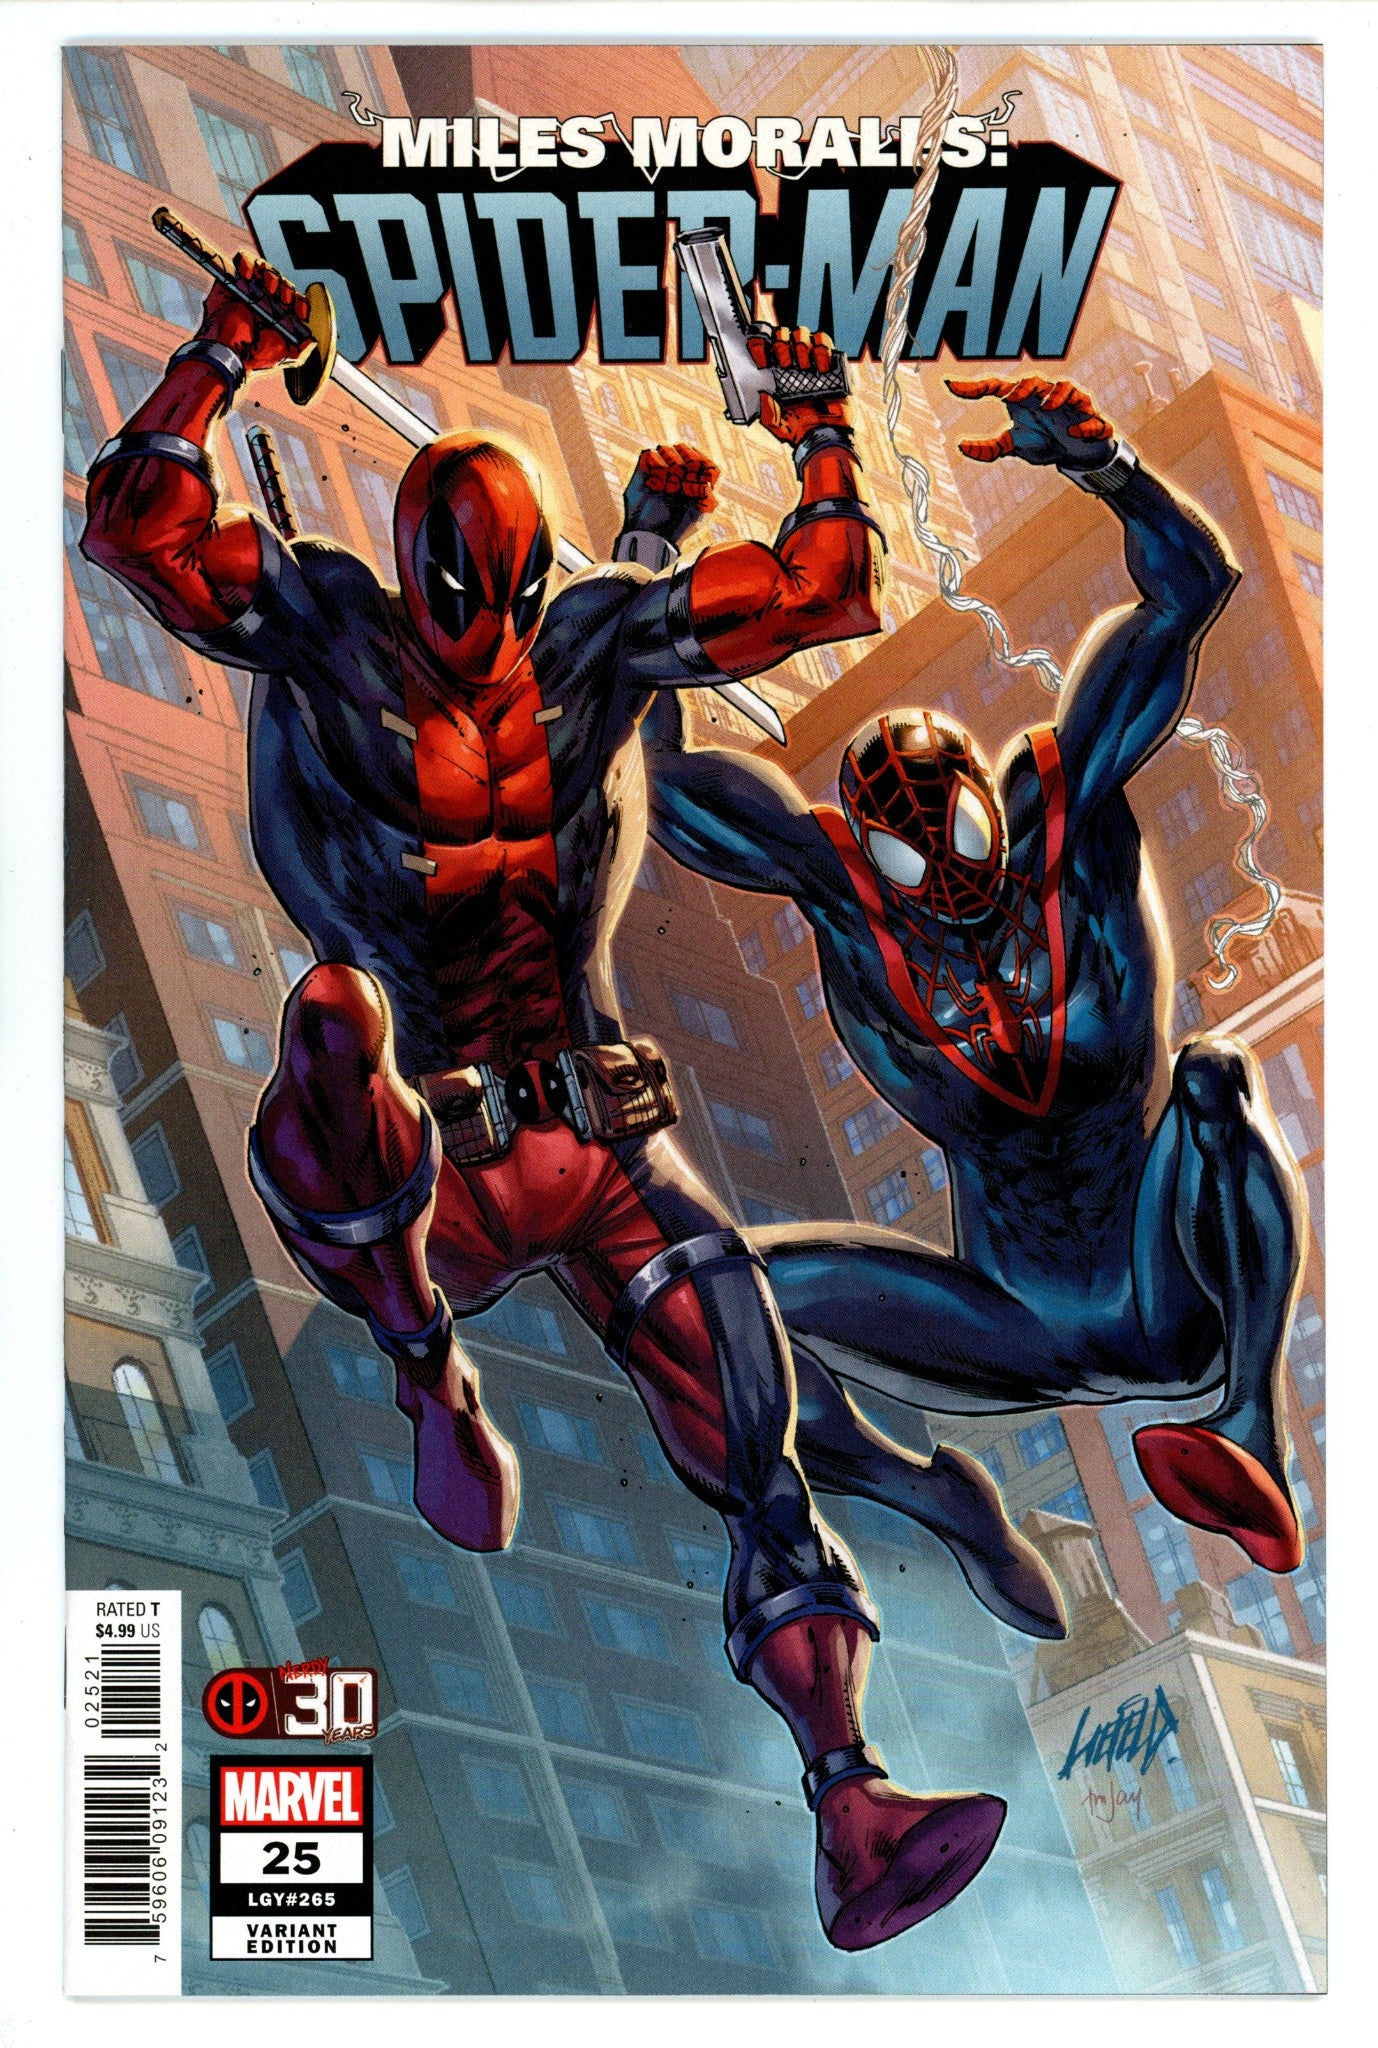 Miles Morales: Spider-Man Vol 1 25 (265)High Grade(2021) LiefledVariant